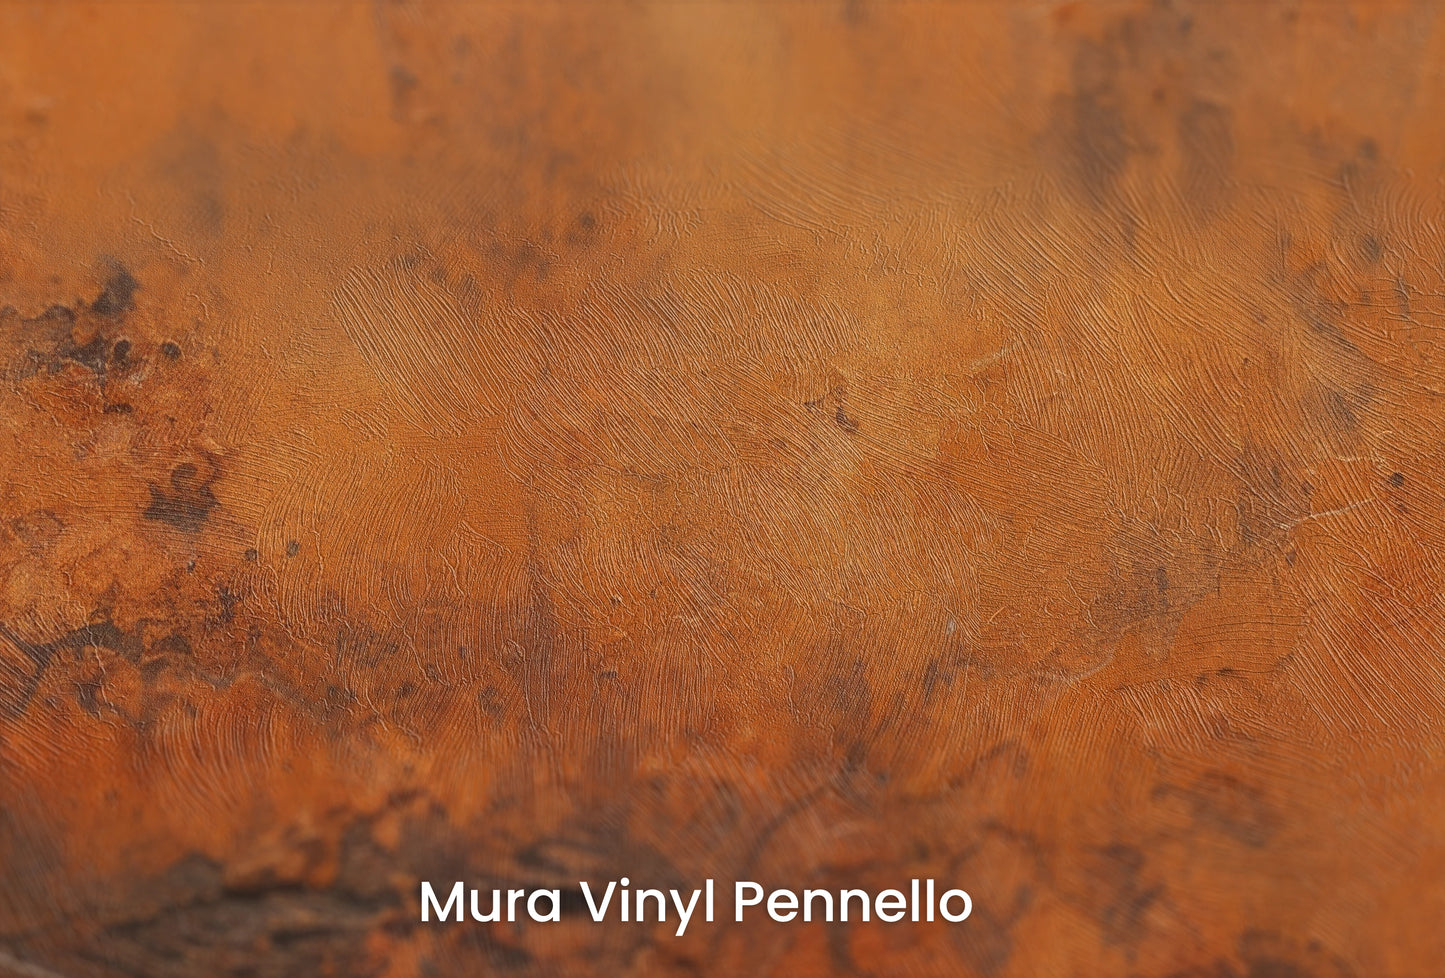 Zbliżenie na artystyczną fototapetę o nazwie Rustic Copper na podłożu Mura Vinyl Pennello - faktura pociągnięć pędzla malarskiego.